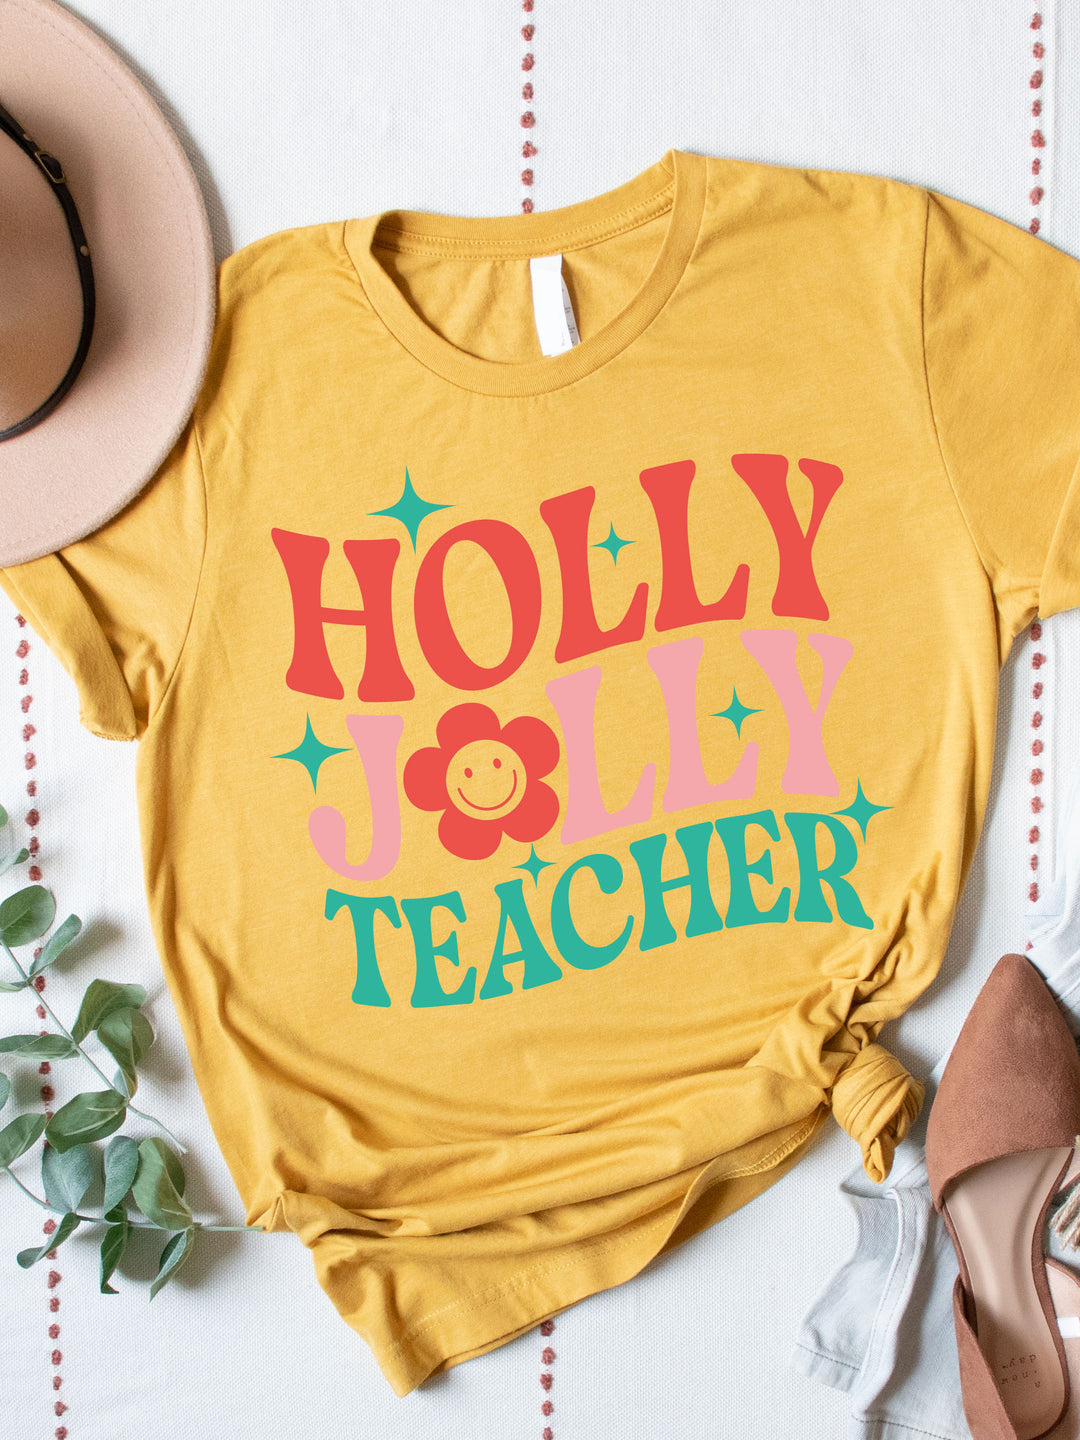 Holly Jolly Teacher Graphic Tee